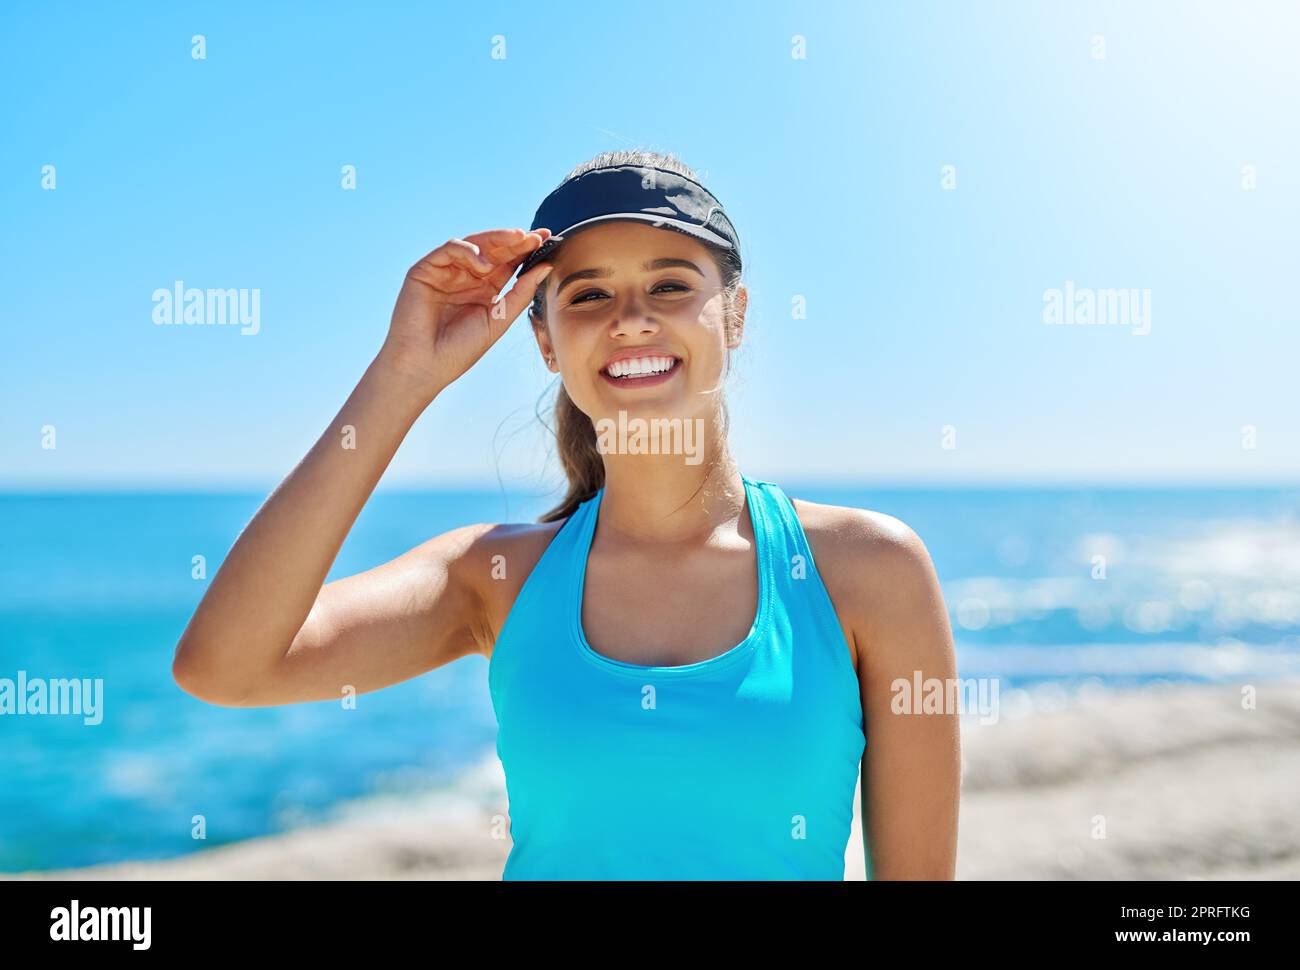 Je suis habillée pour un entraînement sous le soleil. Une jeune femme sportive sur la plage pour son entraînement. Banque D'Images